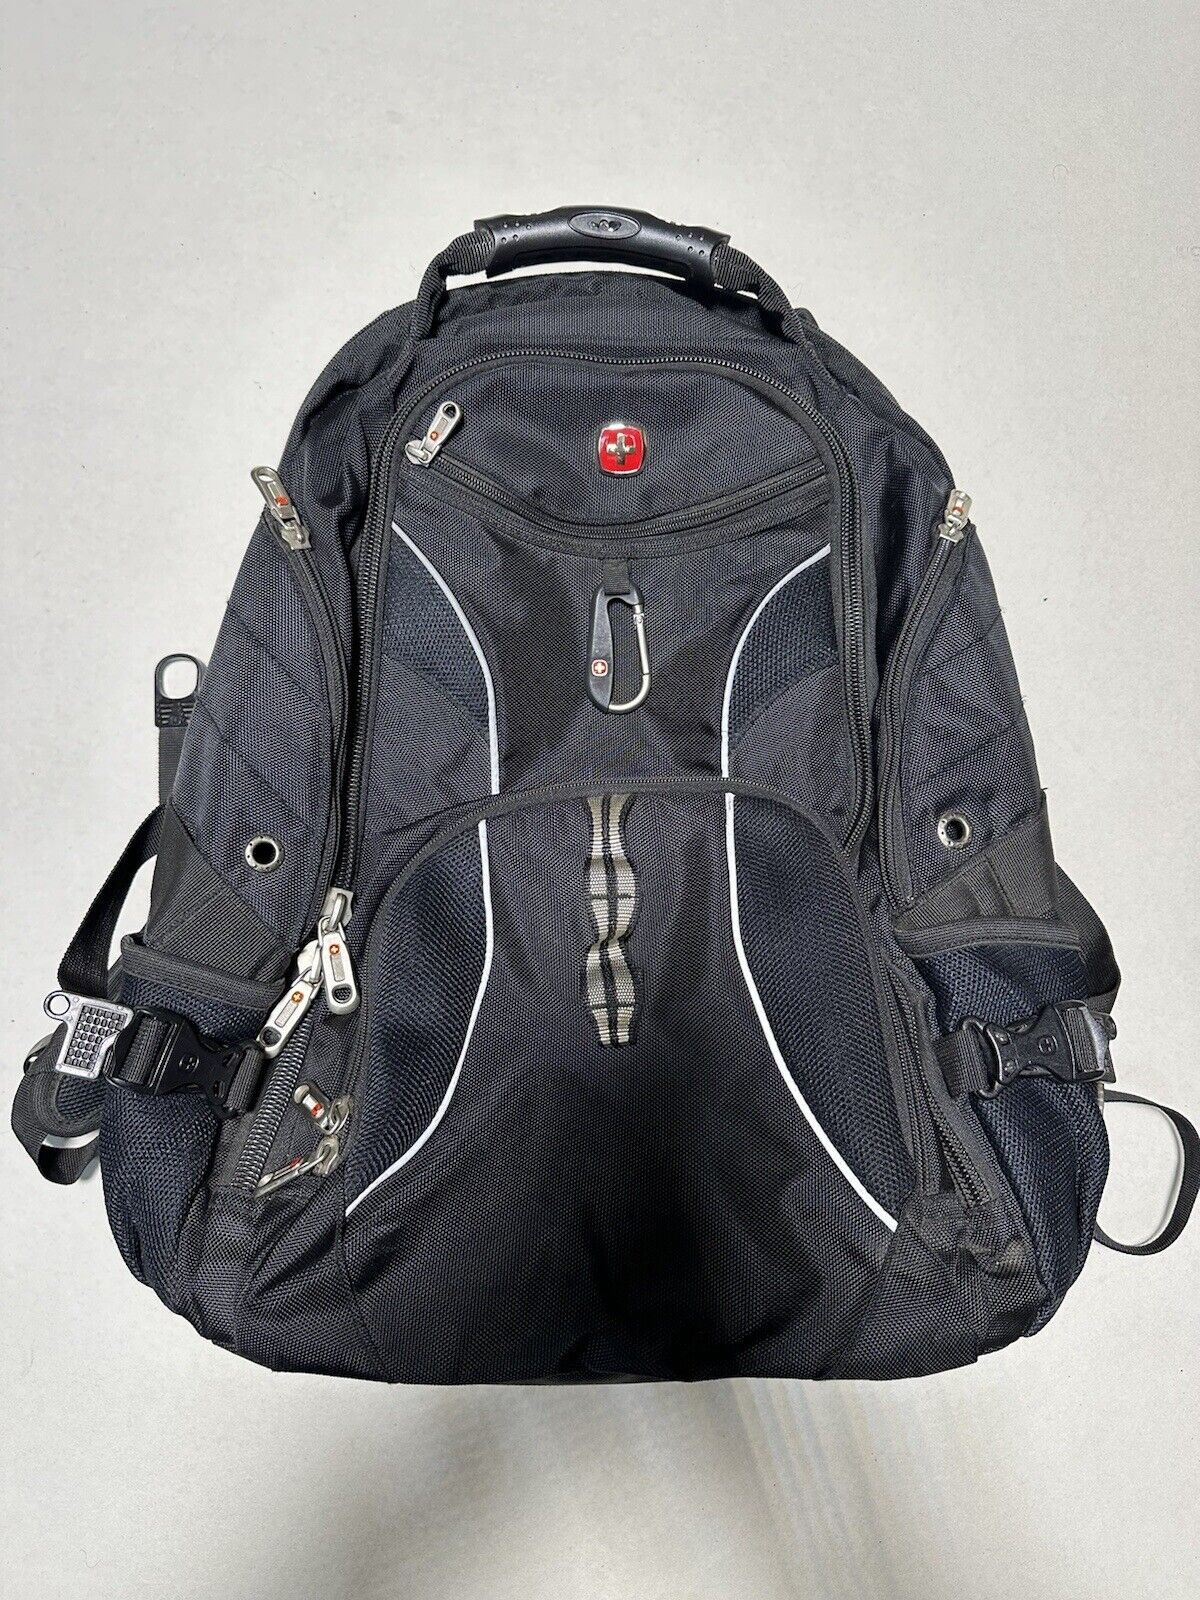 SwissGear Travel Gear ScanSmart Backpack Laptop Backpack